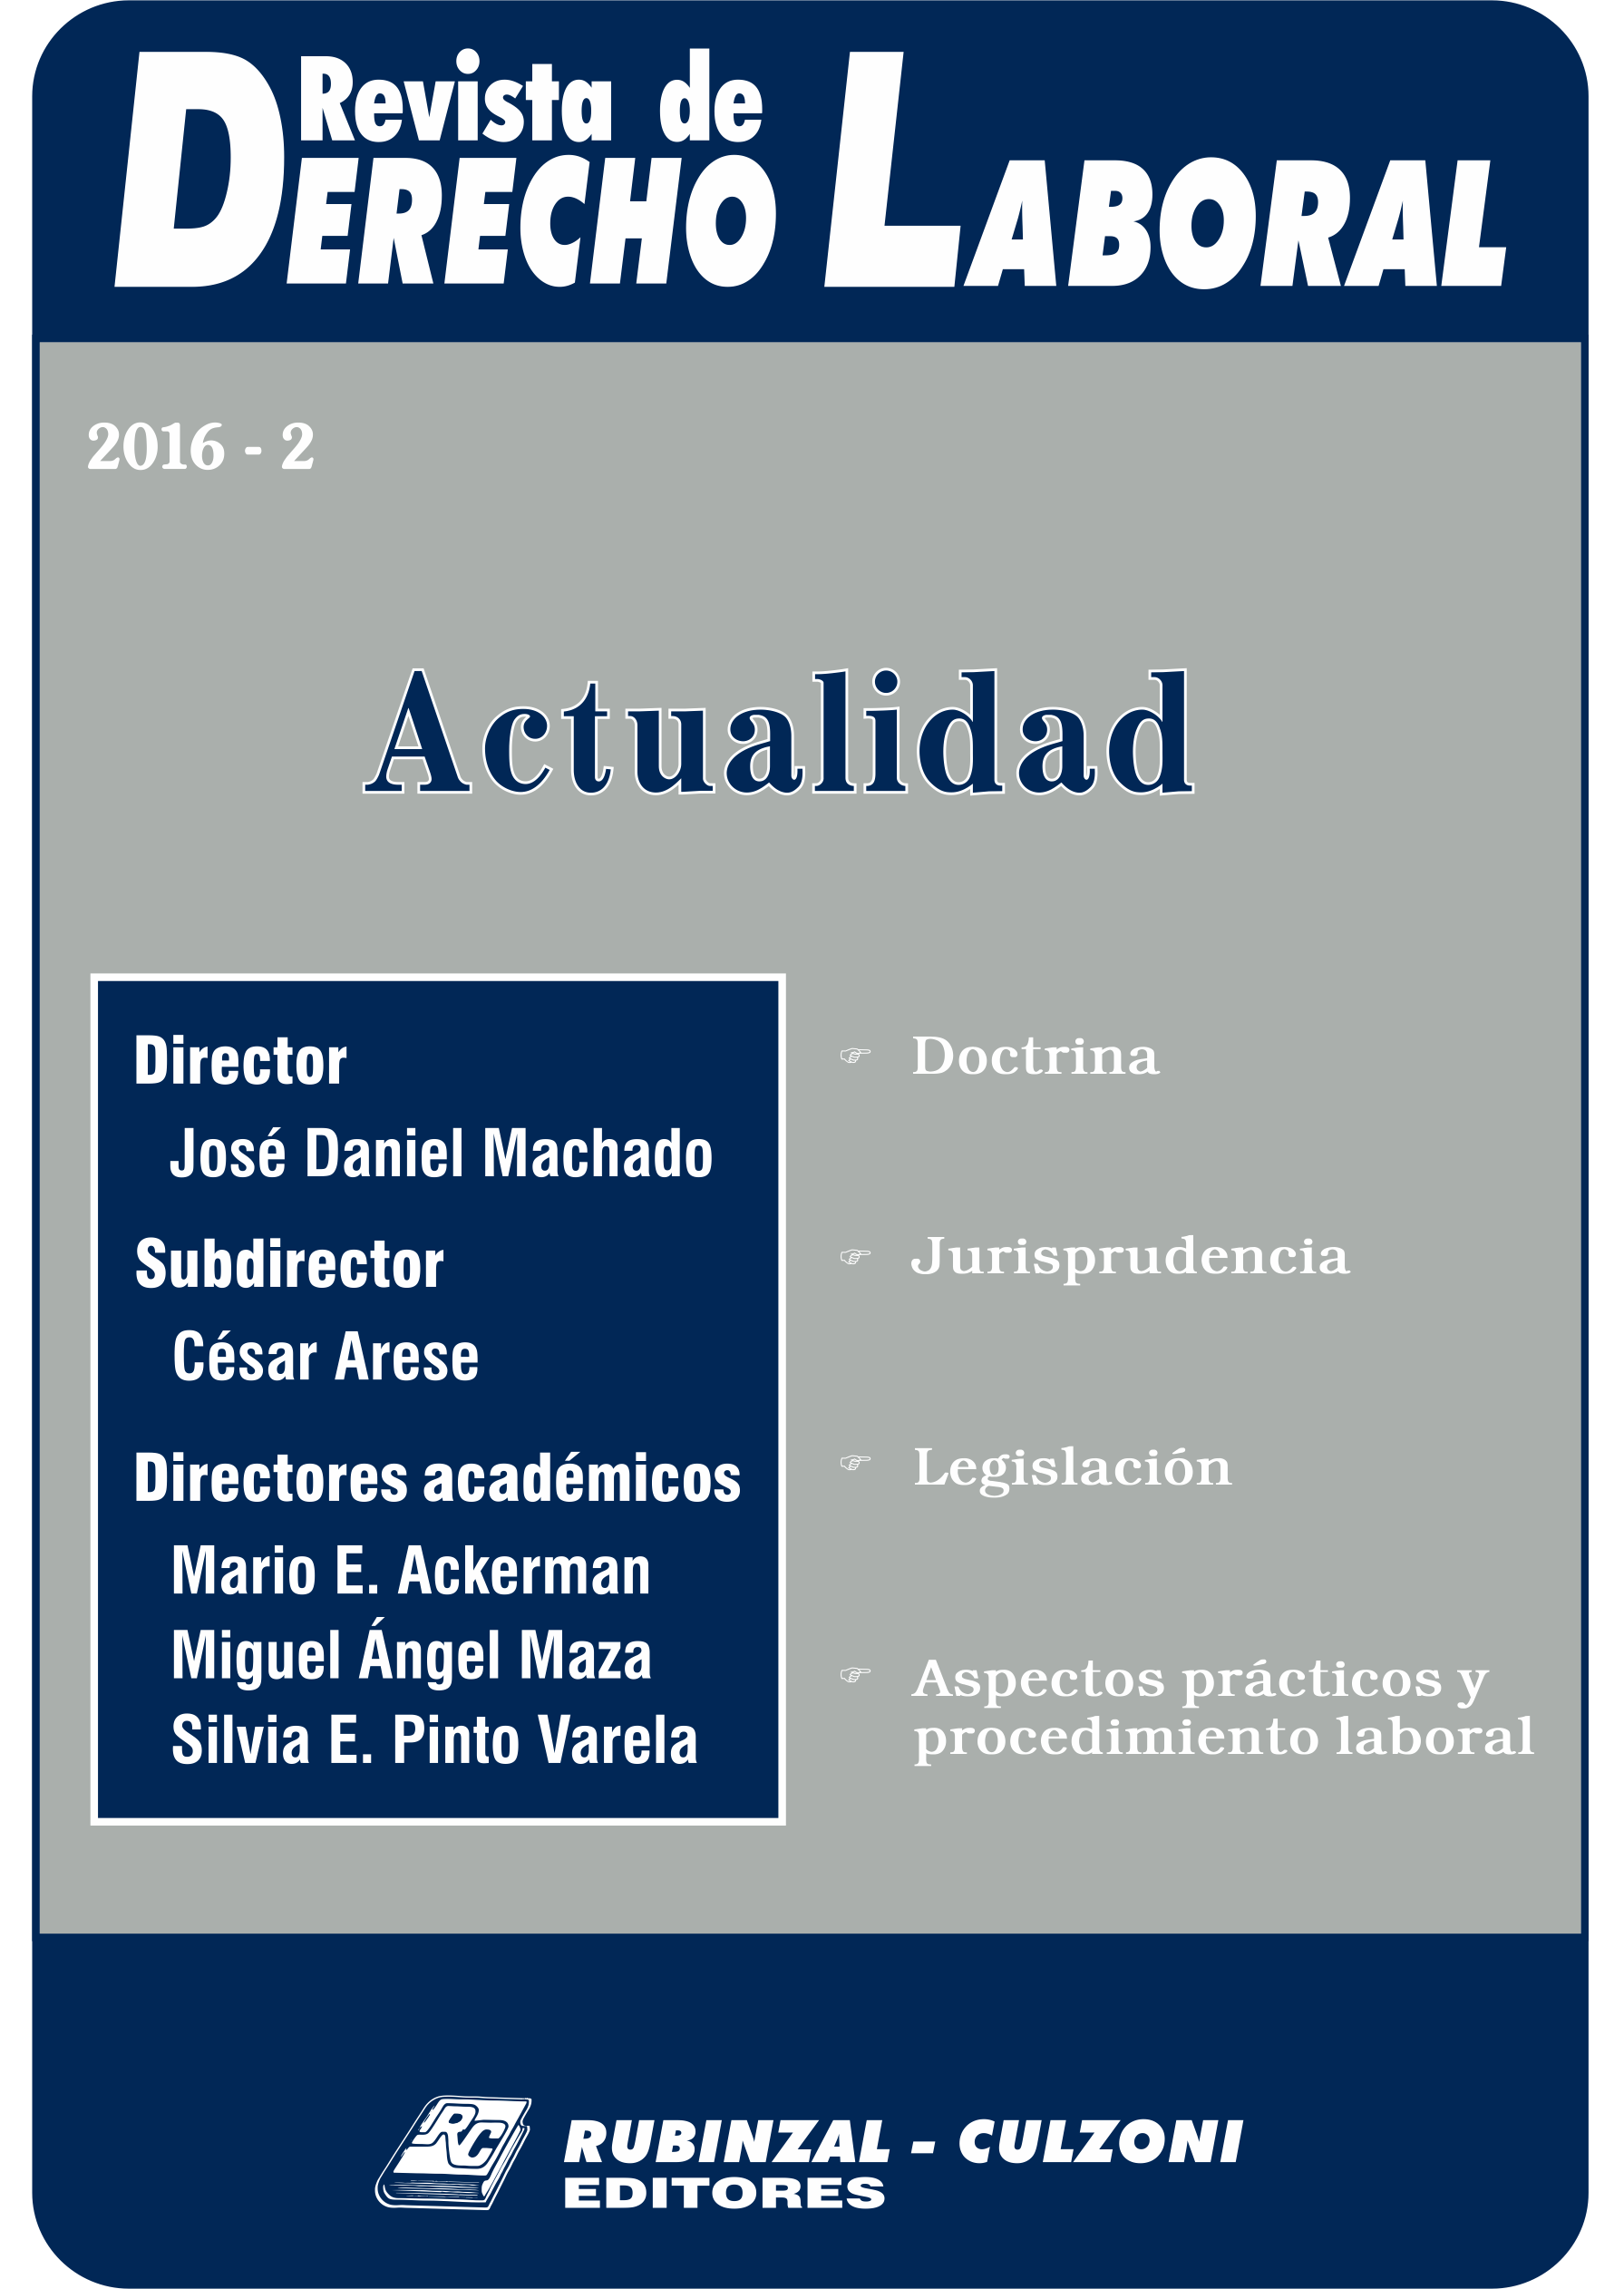 Revista de Derecho Laboral Actualidad - Año 2016 - 2.